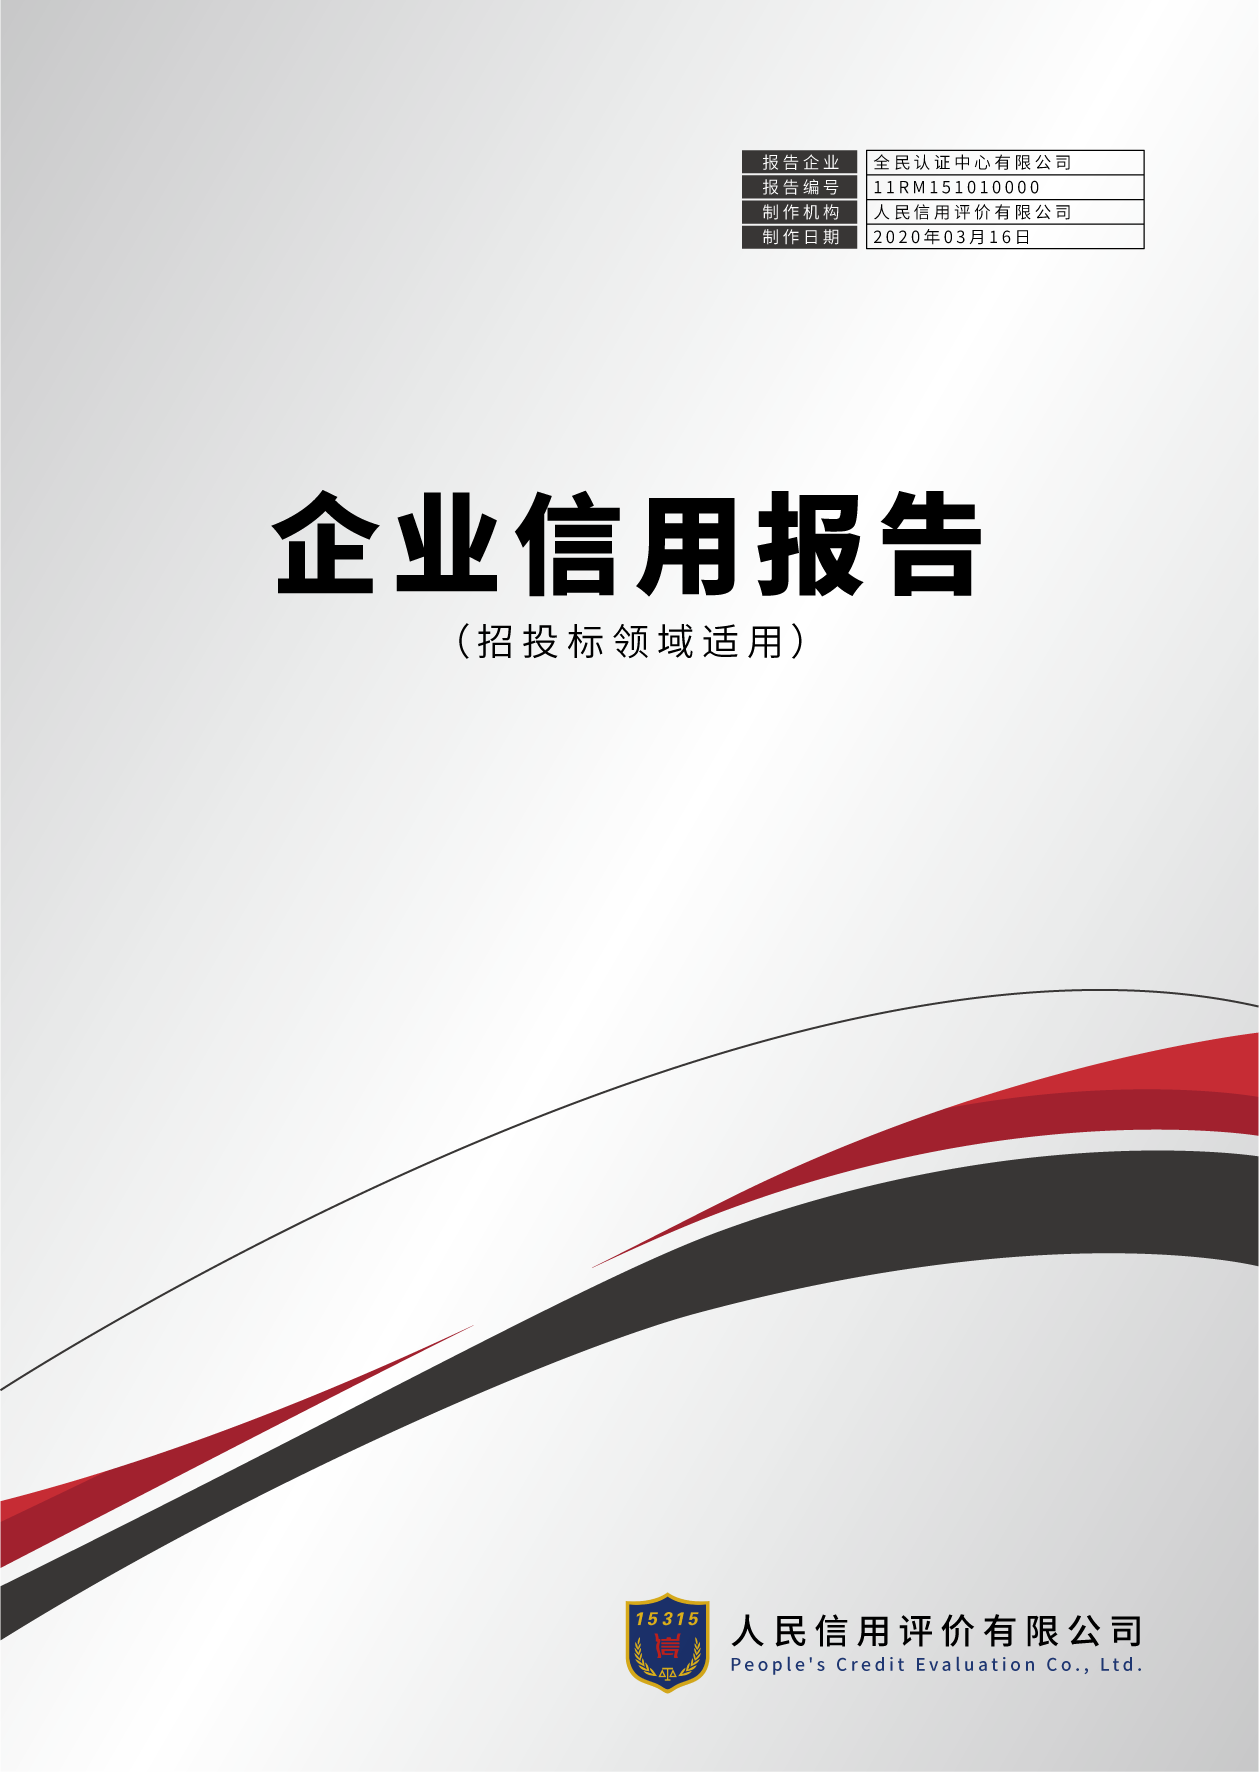 广东省第三方信用服务机构信用评级报告